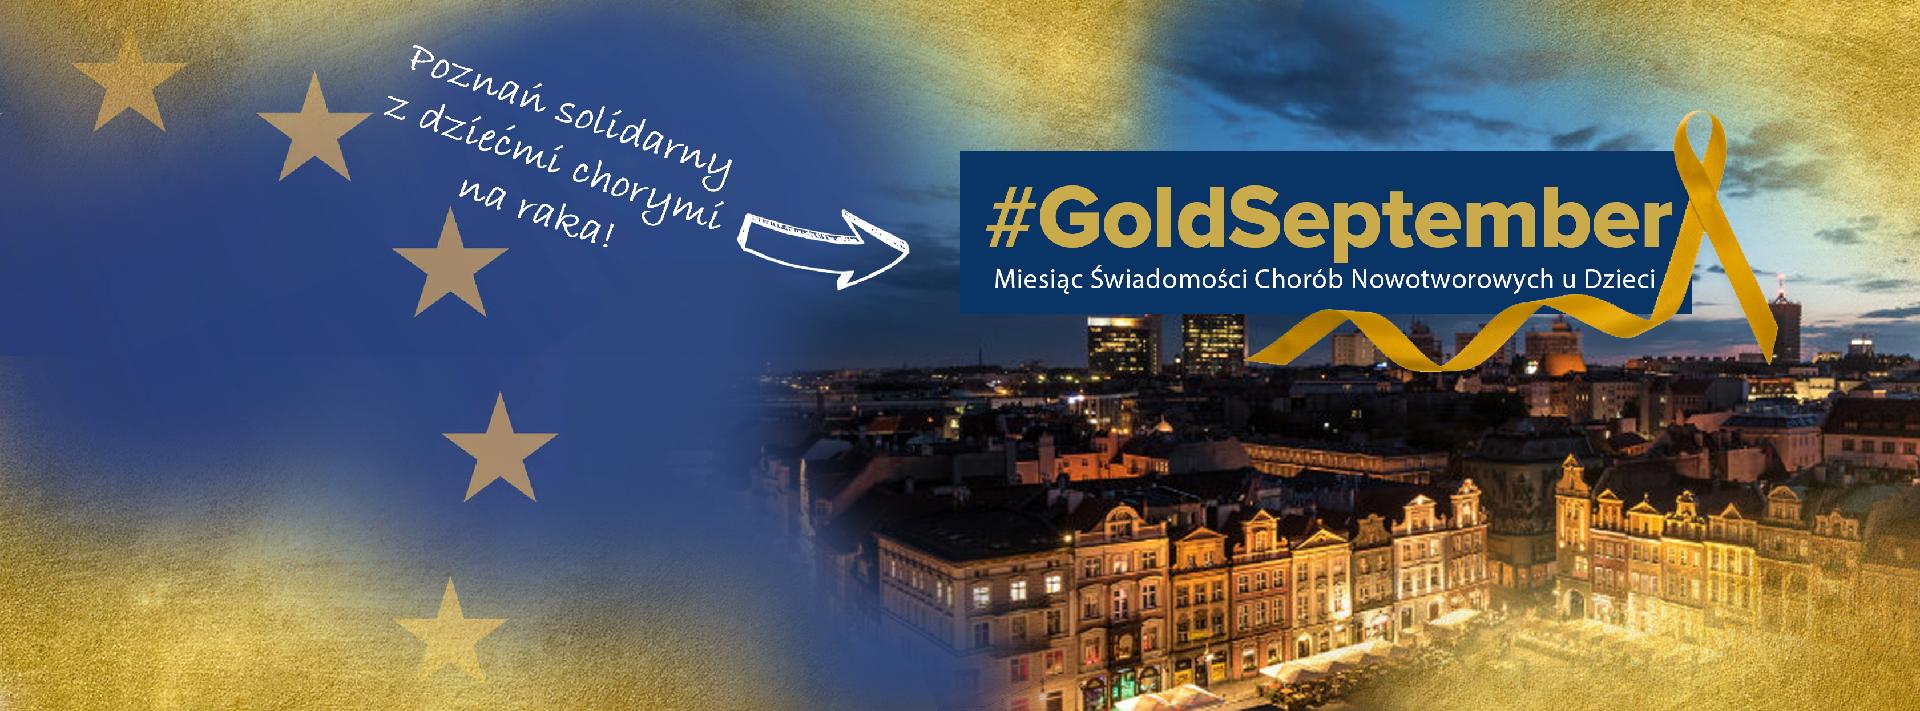 Na ilustracji widać miasto podświetlone na złoto. Nad zdjęciem znajduje się napis Gold September i złota wstążka. - grafika artykułu